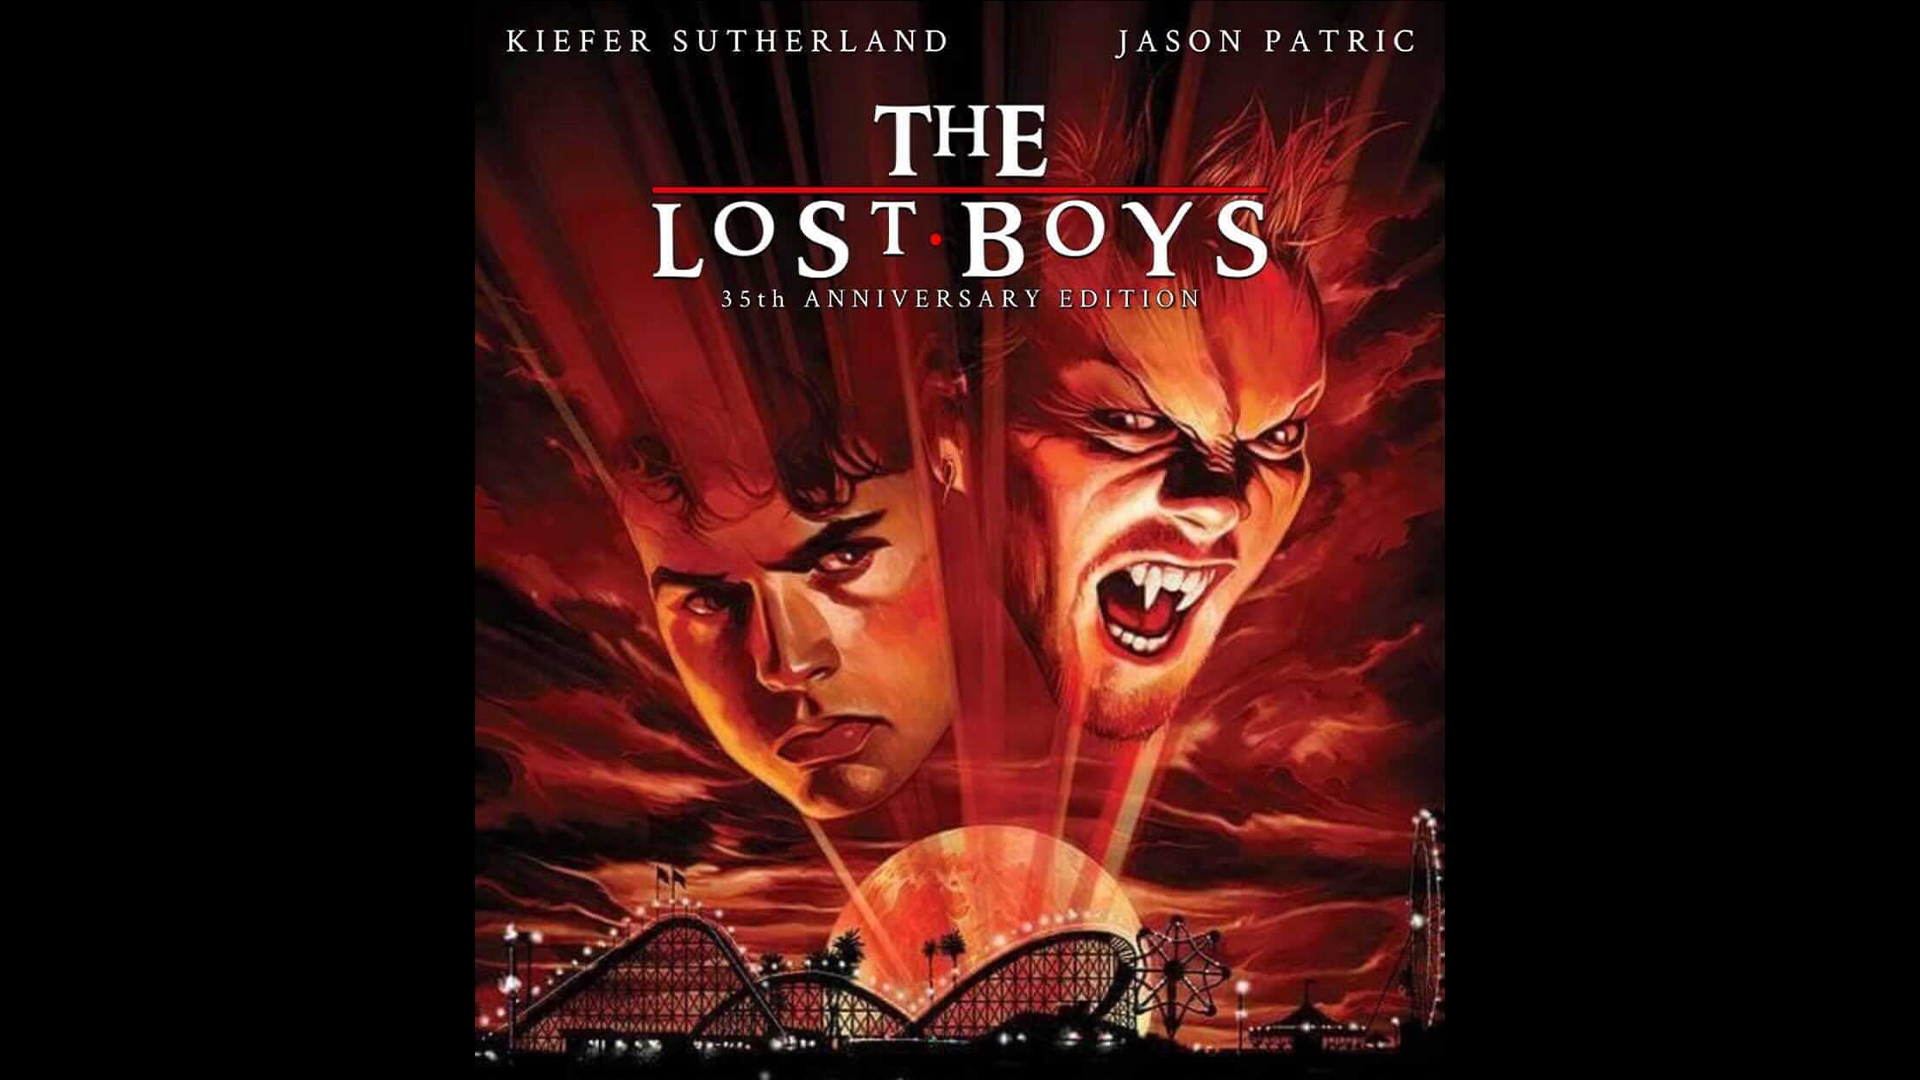 Lost Boys 3